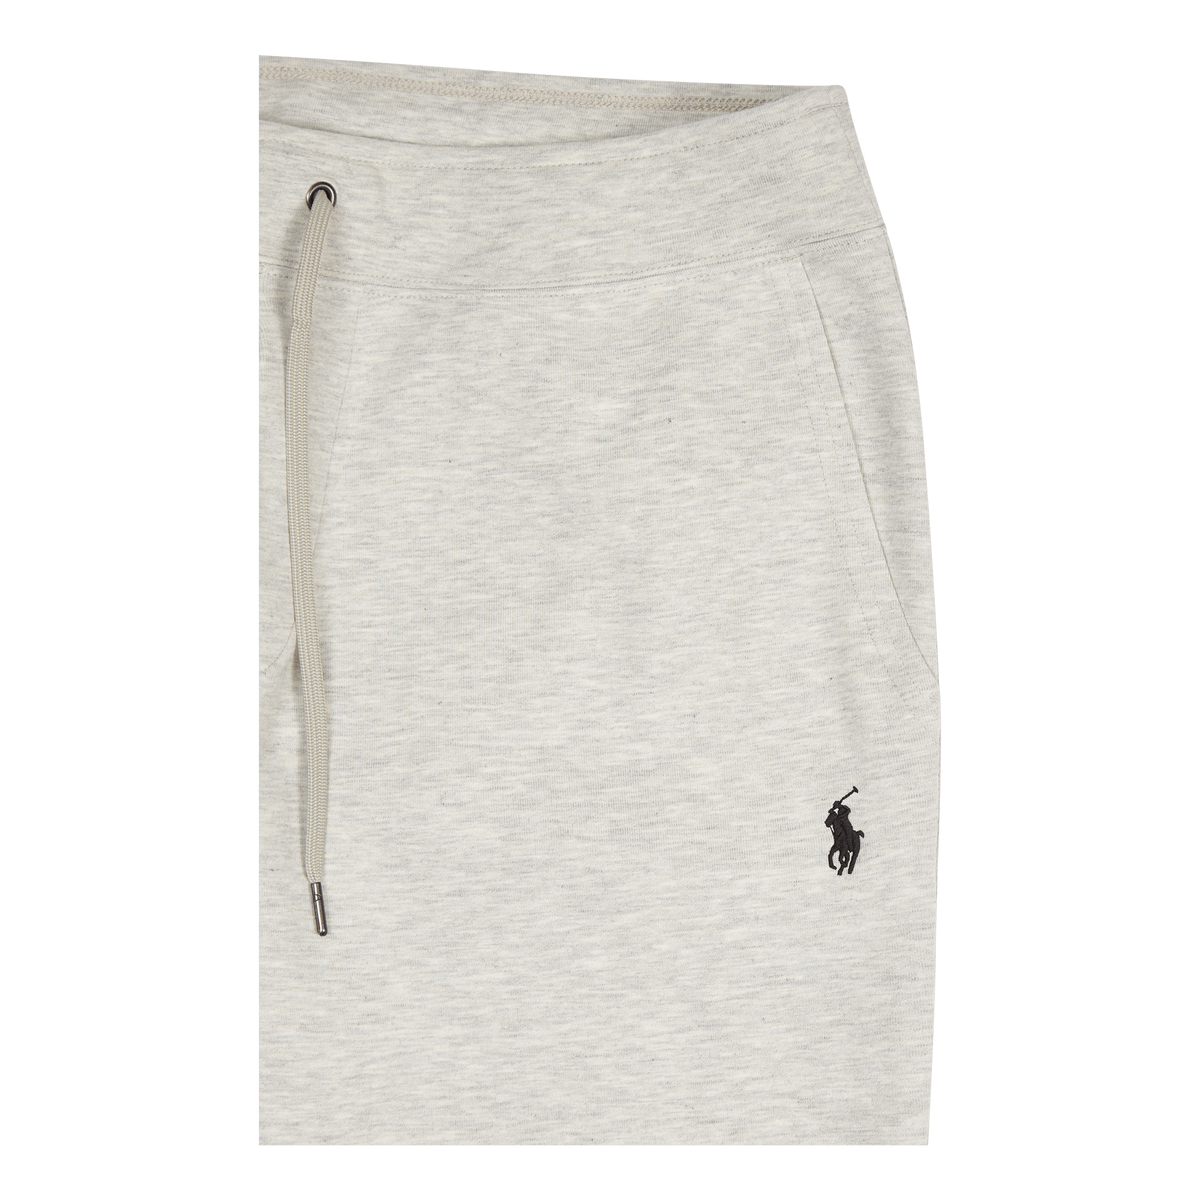 Polo Ralph Lauren Double-Knit Jogger Pant